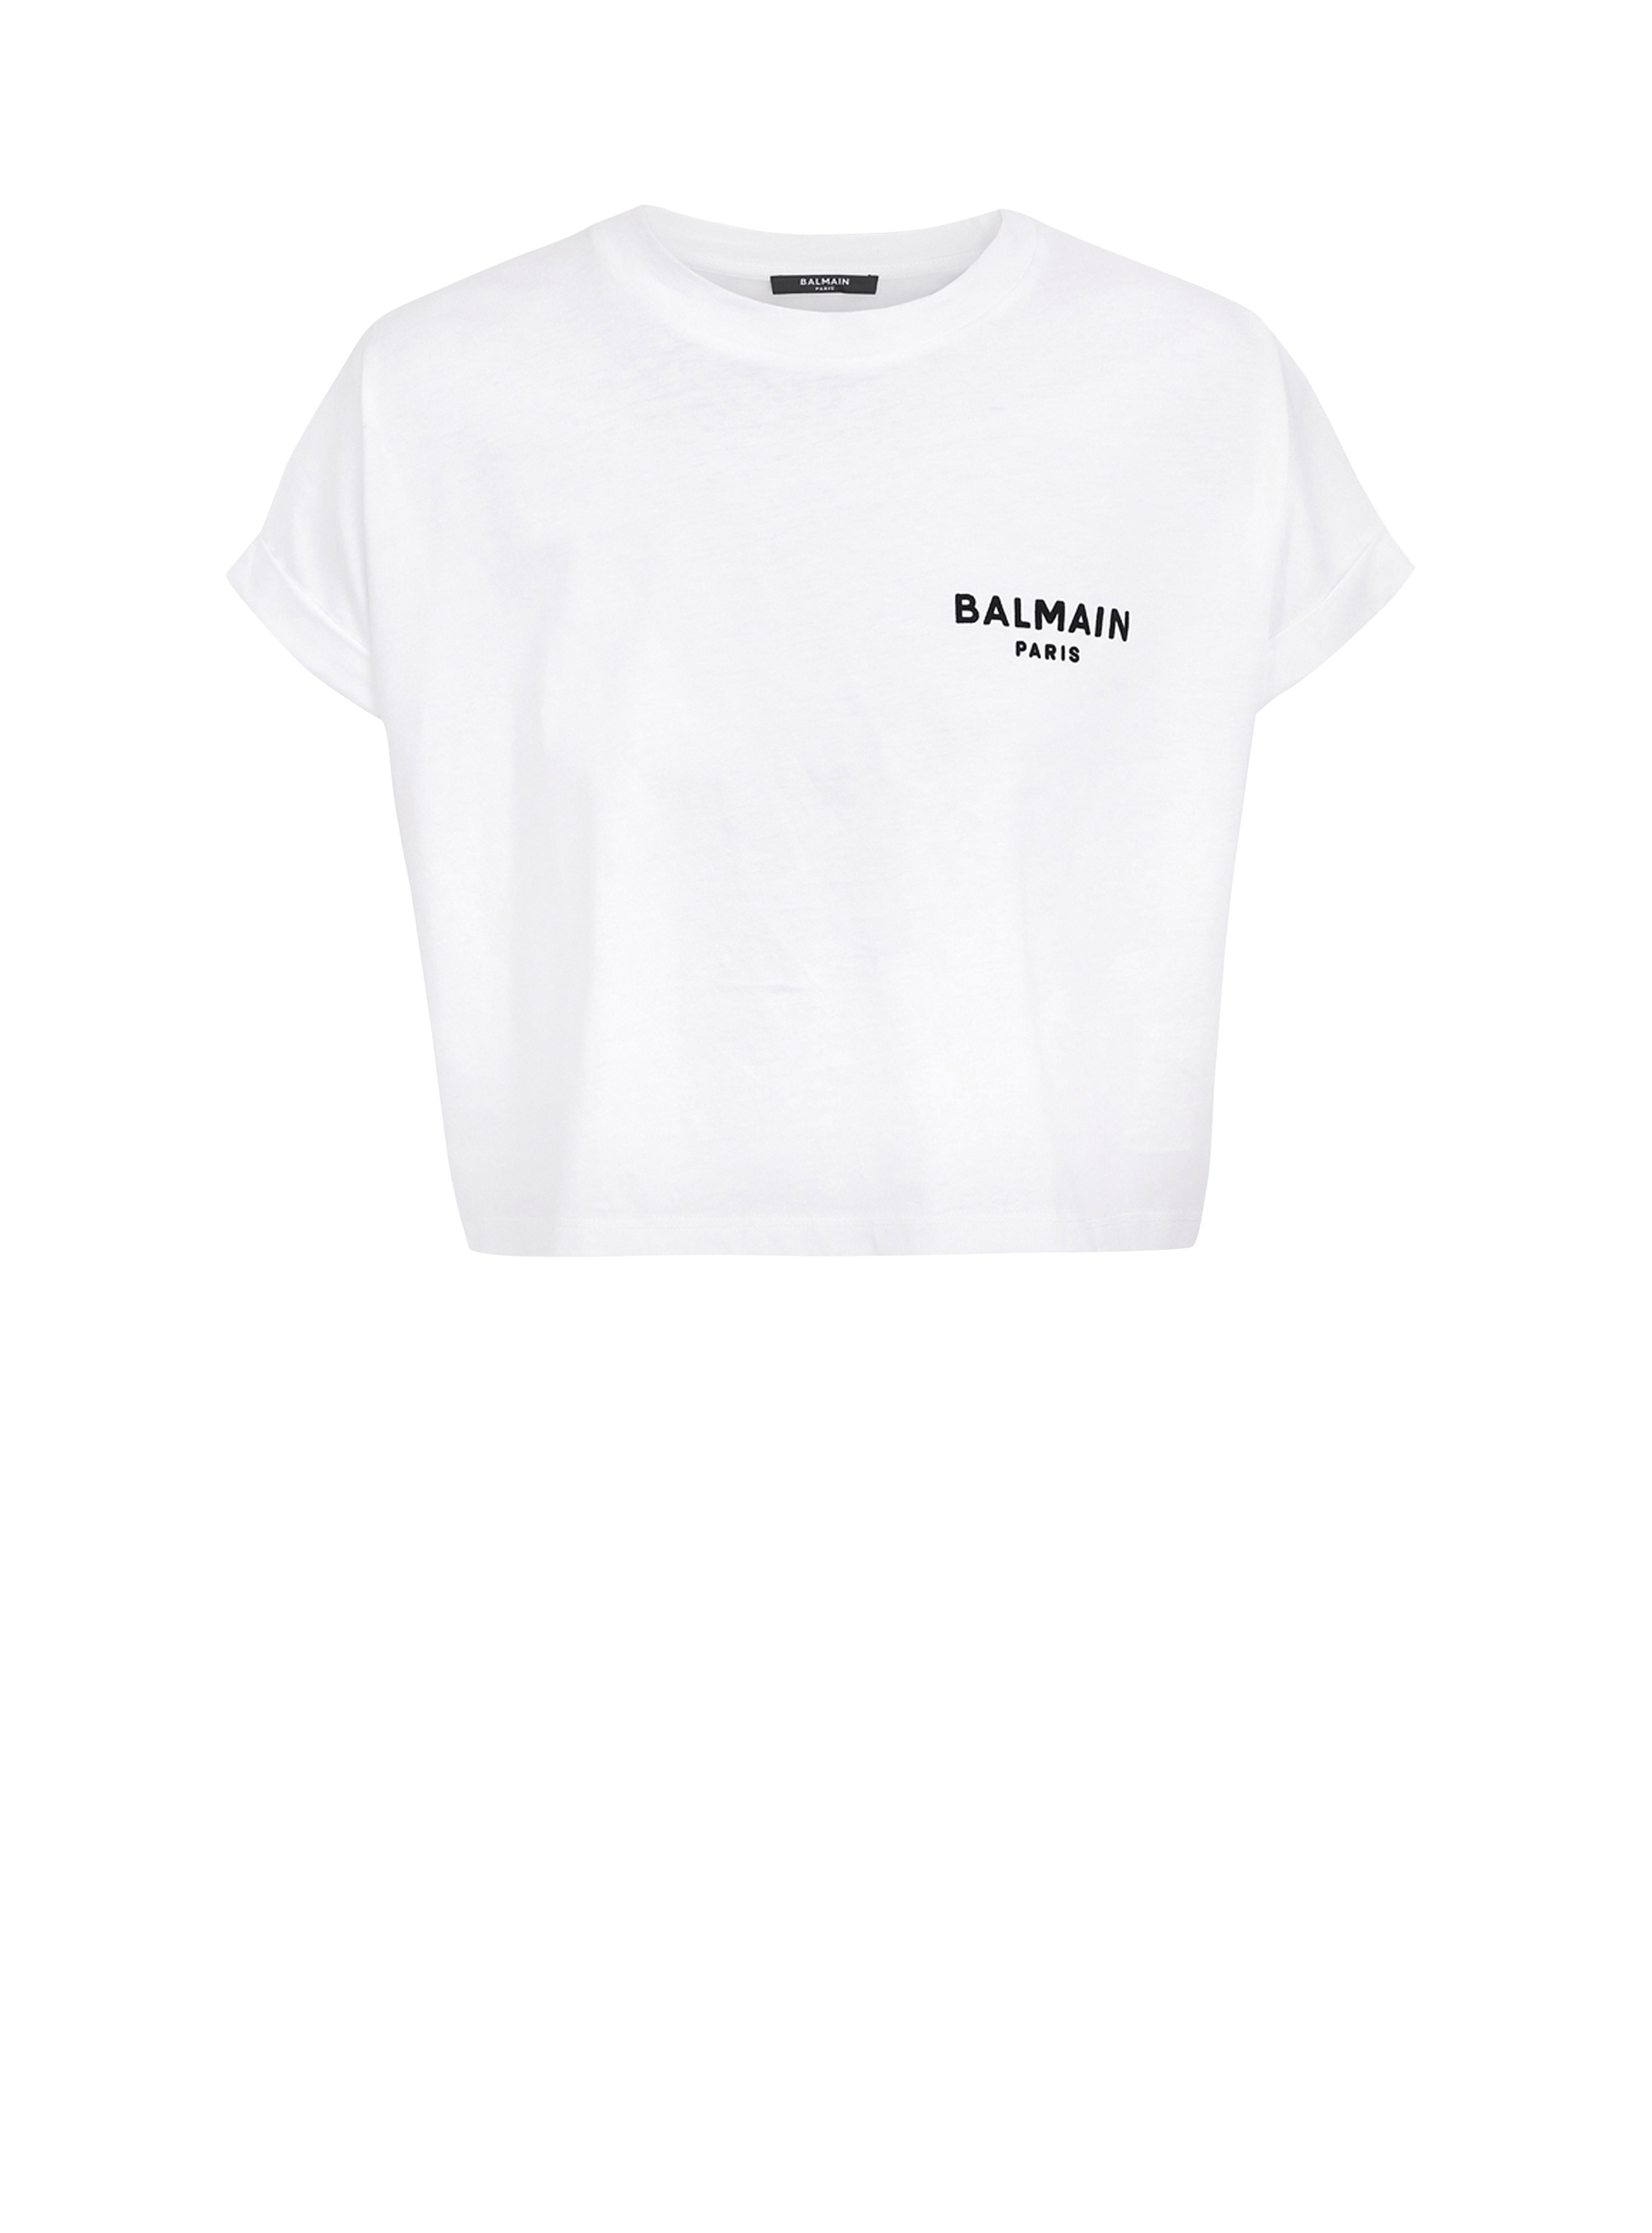 T-shirt corta in cotone con piccolo logo Balmain floccato, bianco